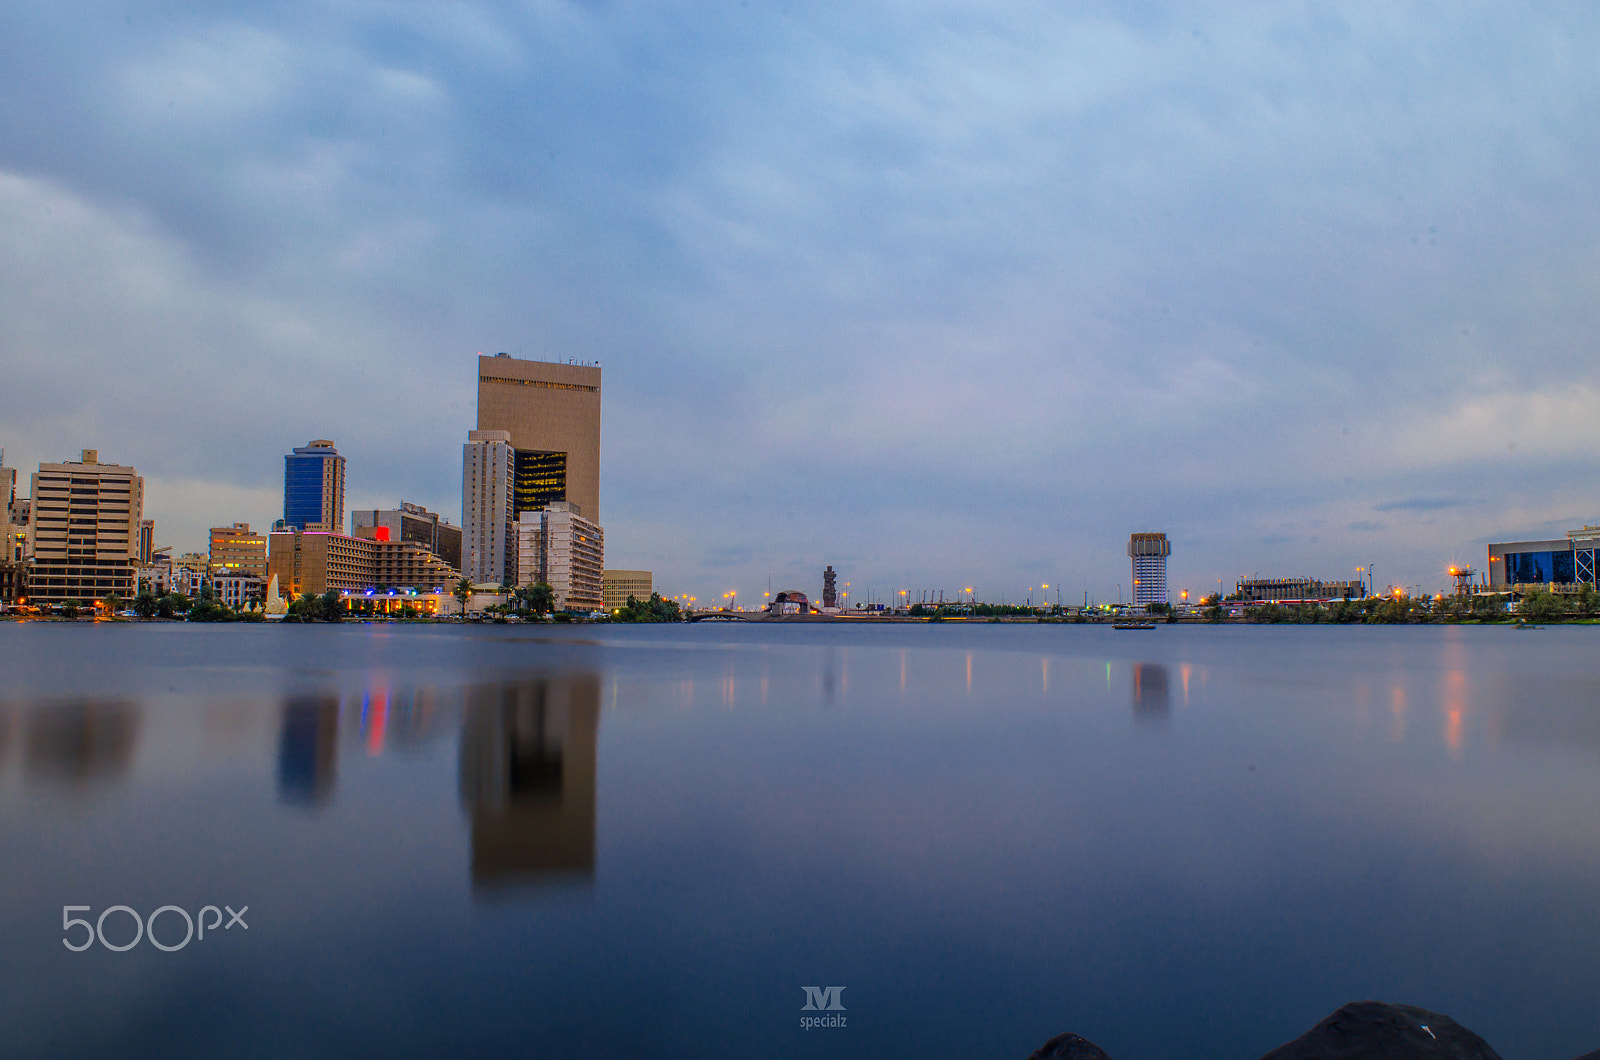 Nikon D5100 sample photo. Jeddah skyline photography